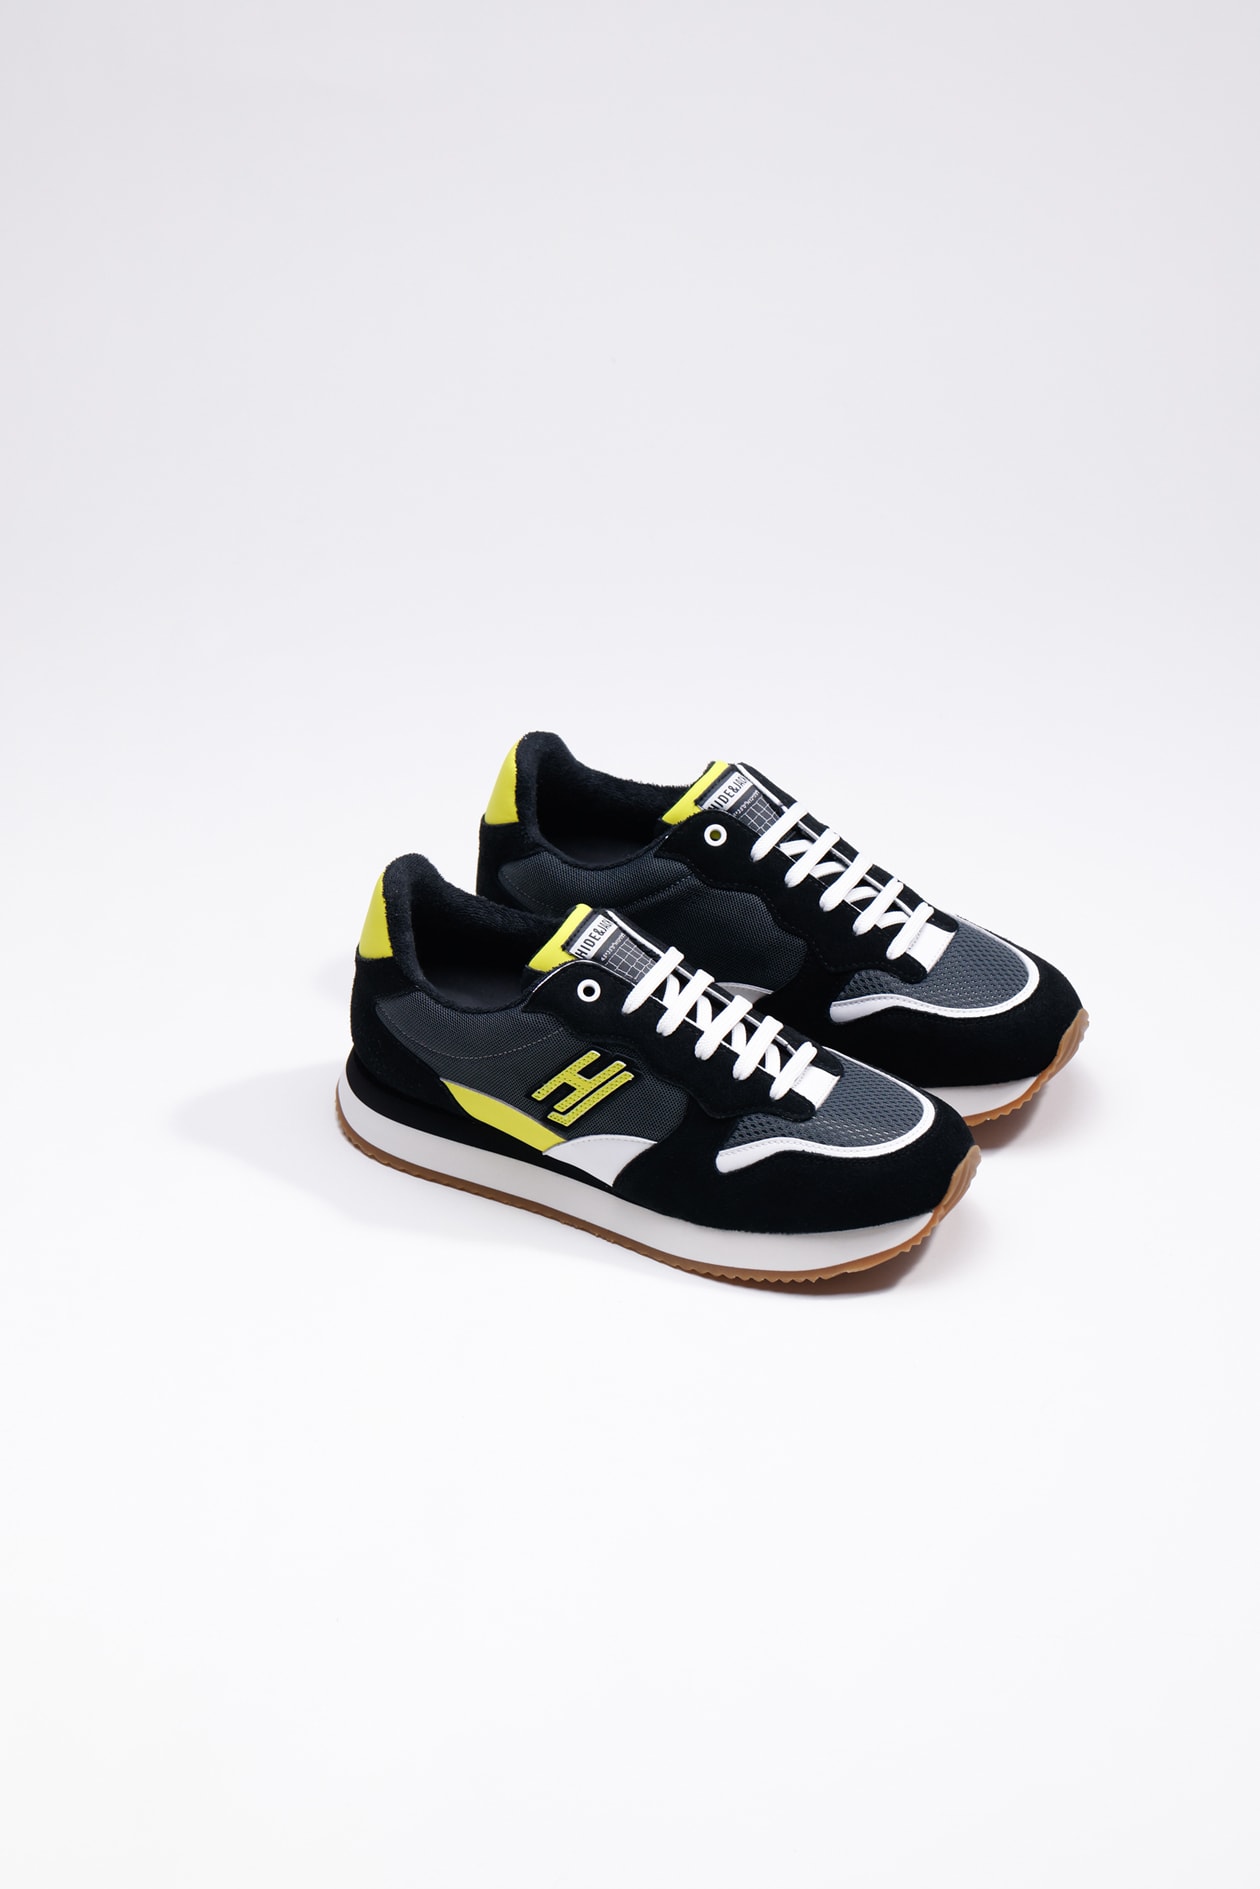 Hide&amp;jack Low Top Sneaker - Over Black Yellow